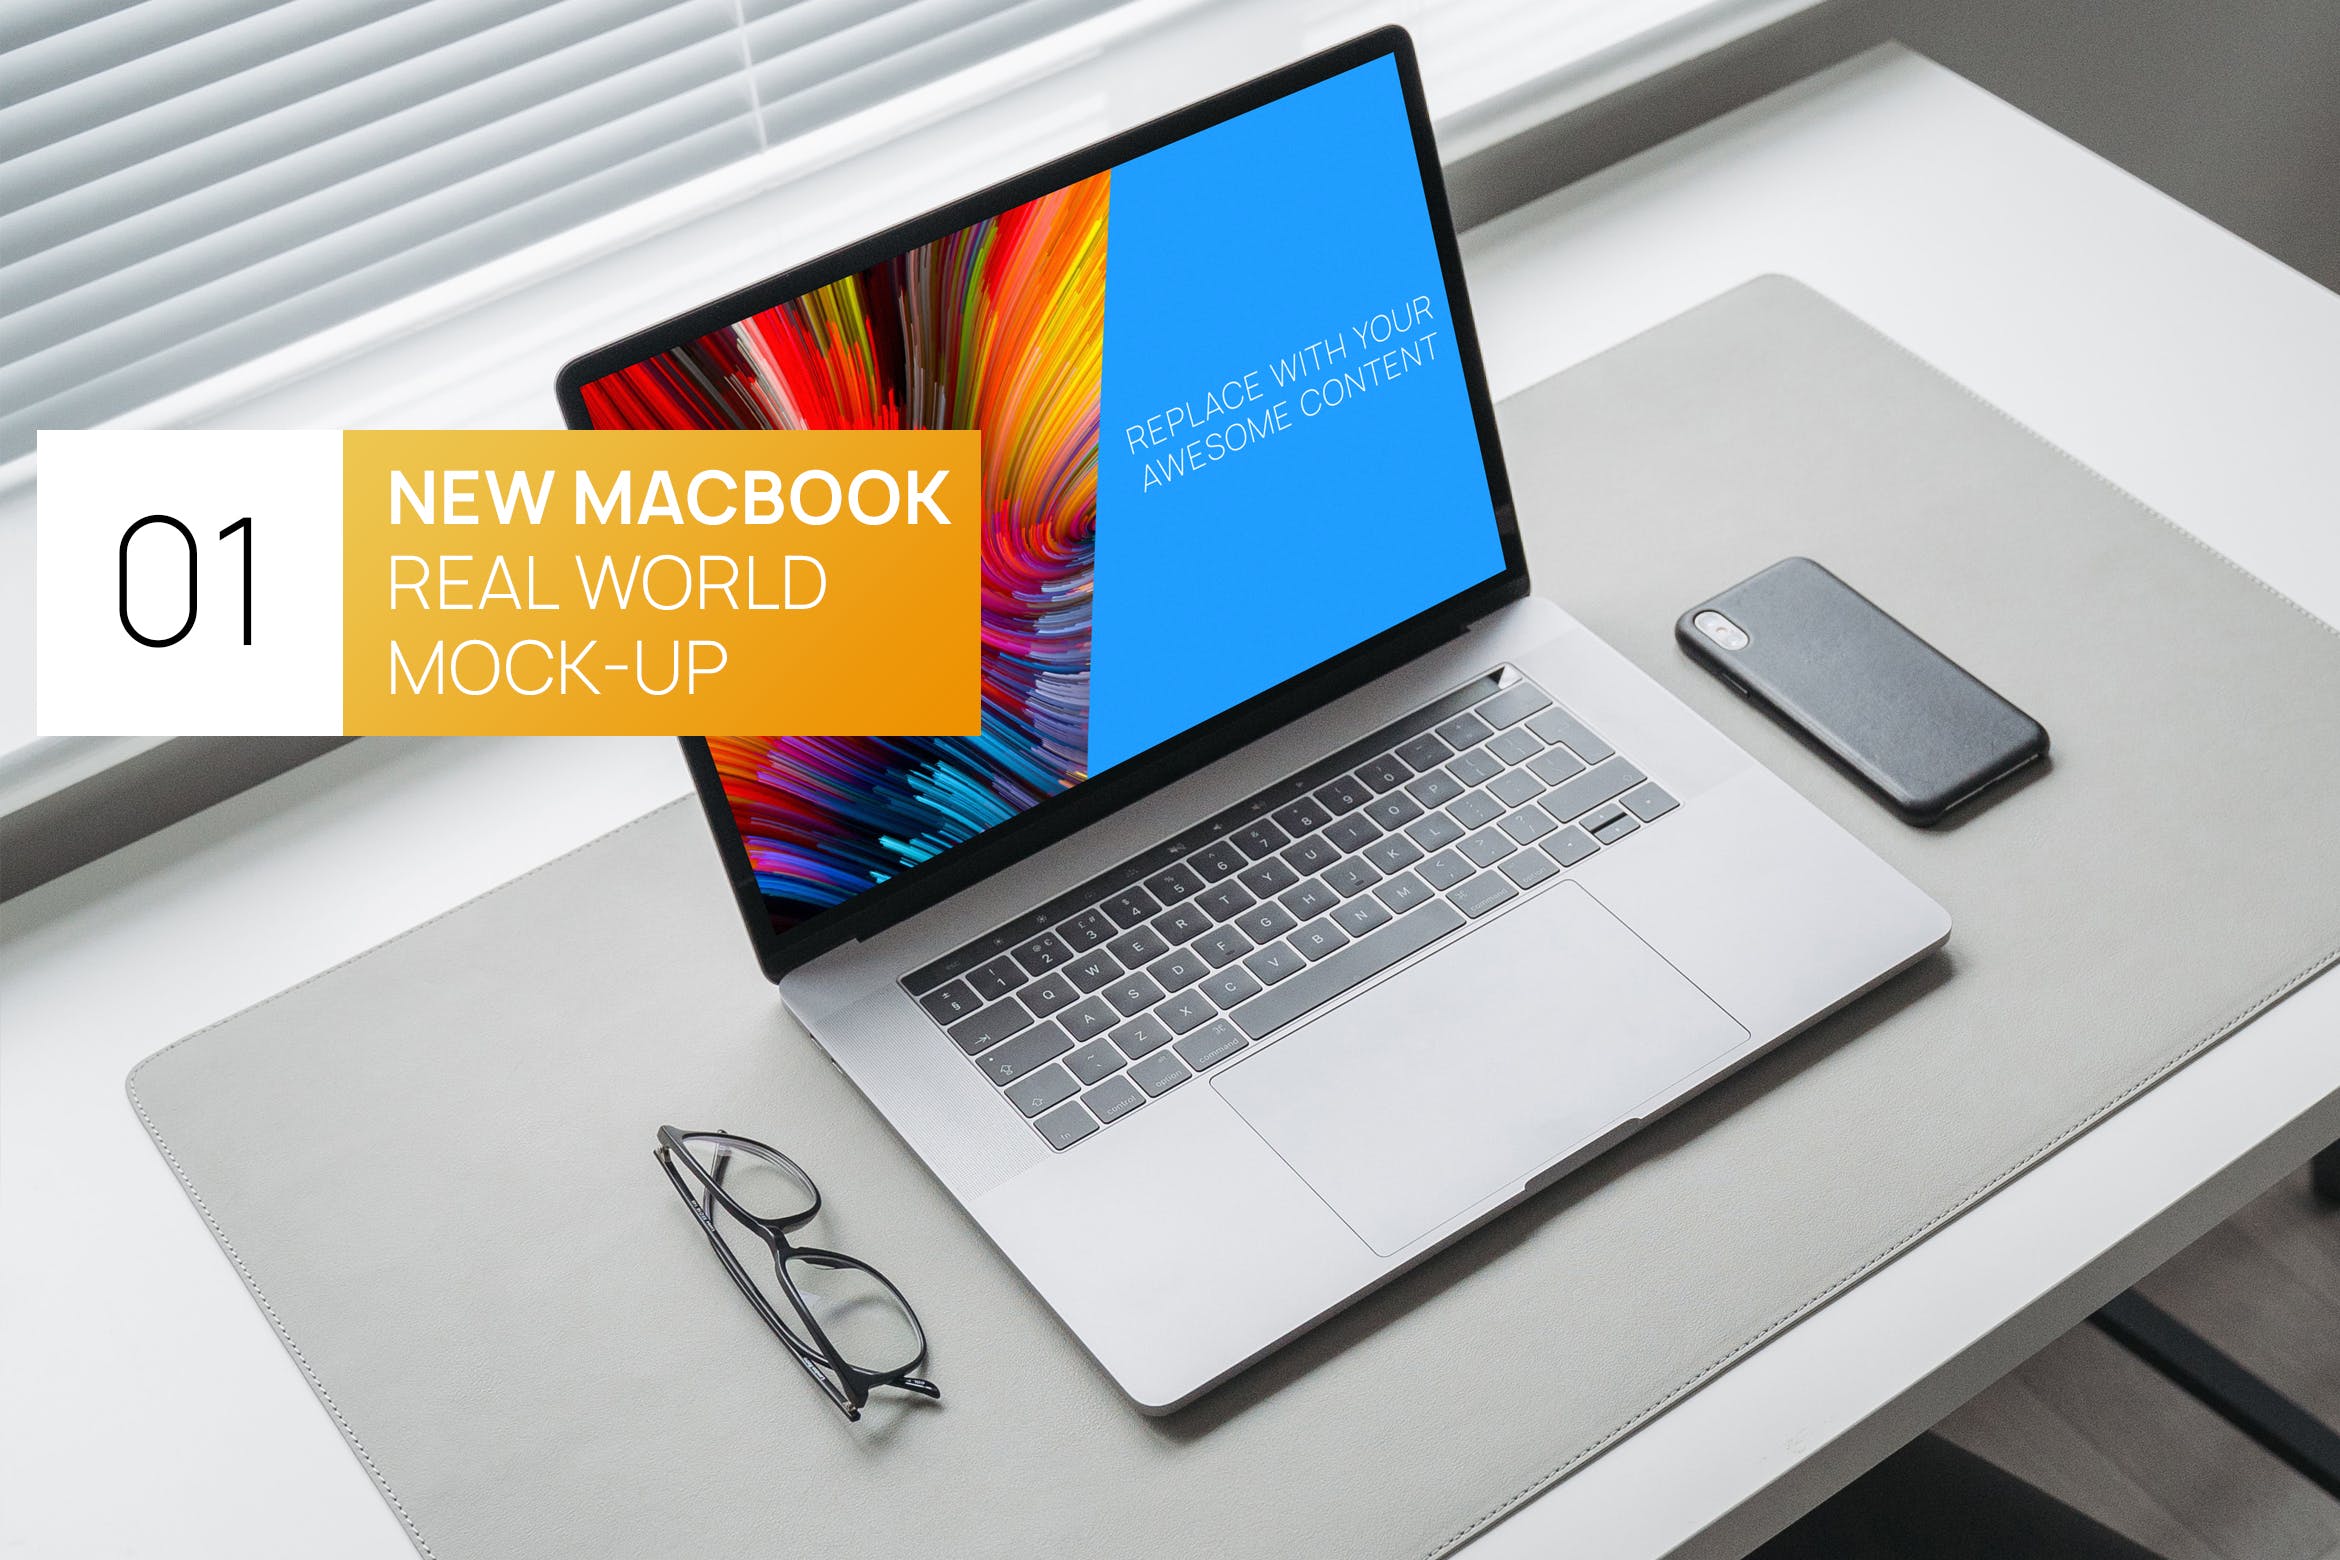 极简主义办公桌15寸MacBook笔记本电脑第一素材精选样机 Minimalistic MacBook 15 Touchbar Real World Mockup插图